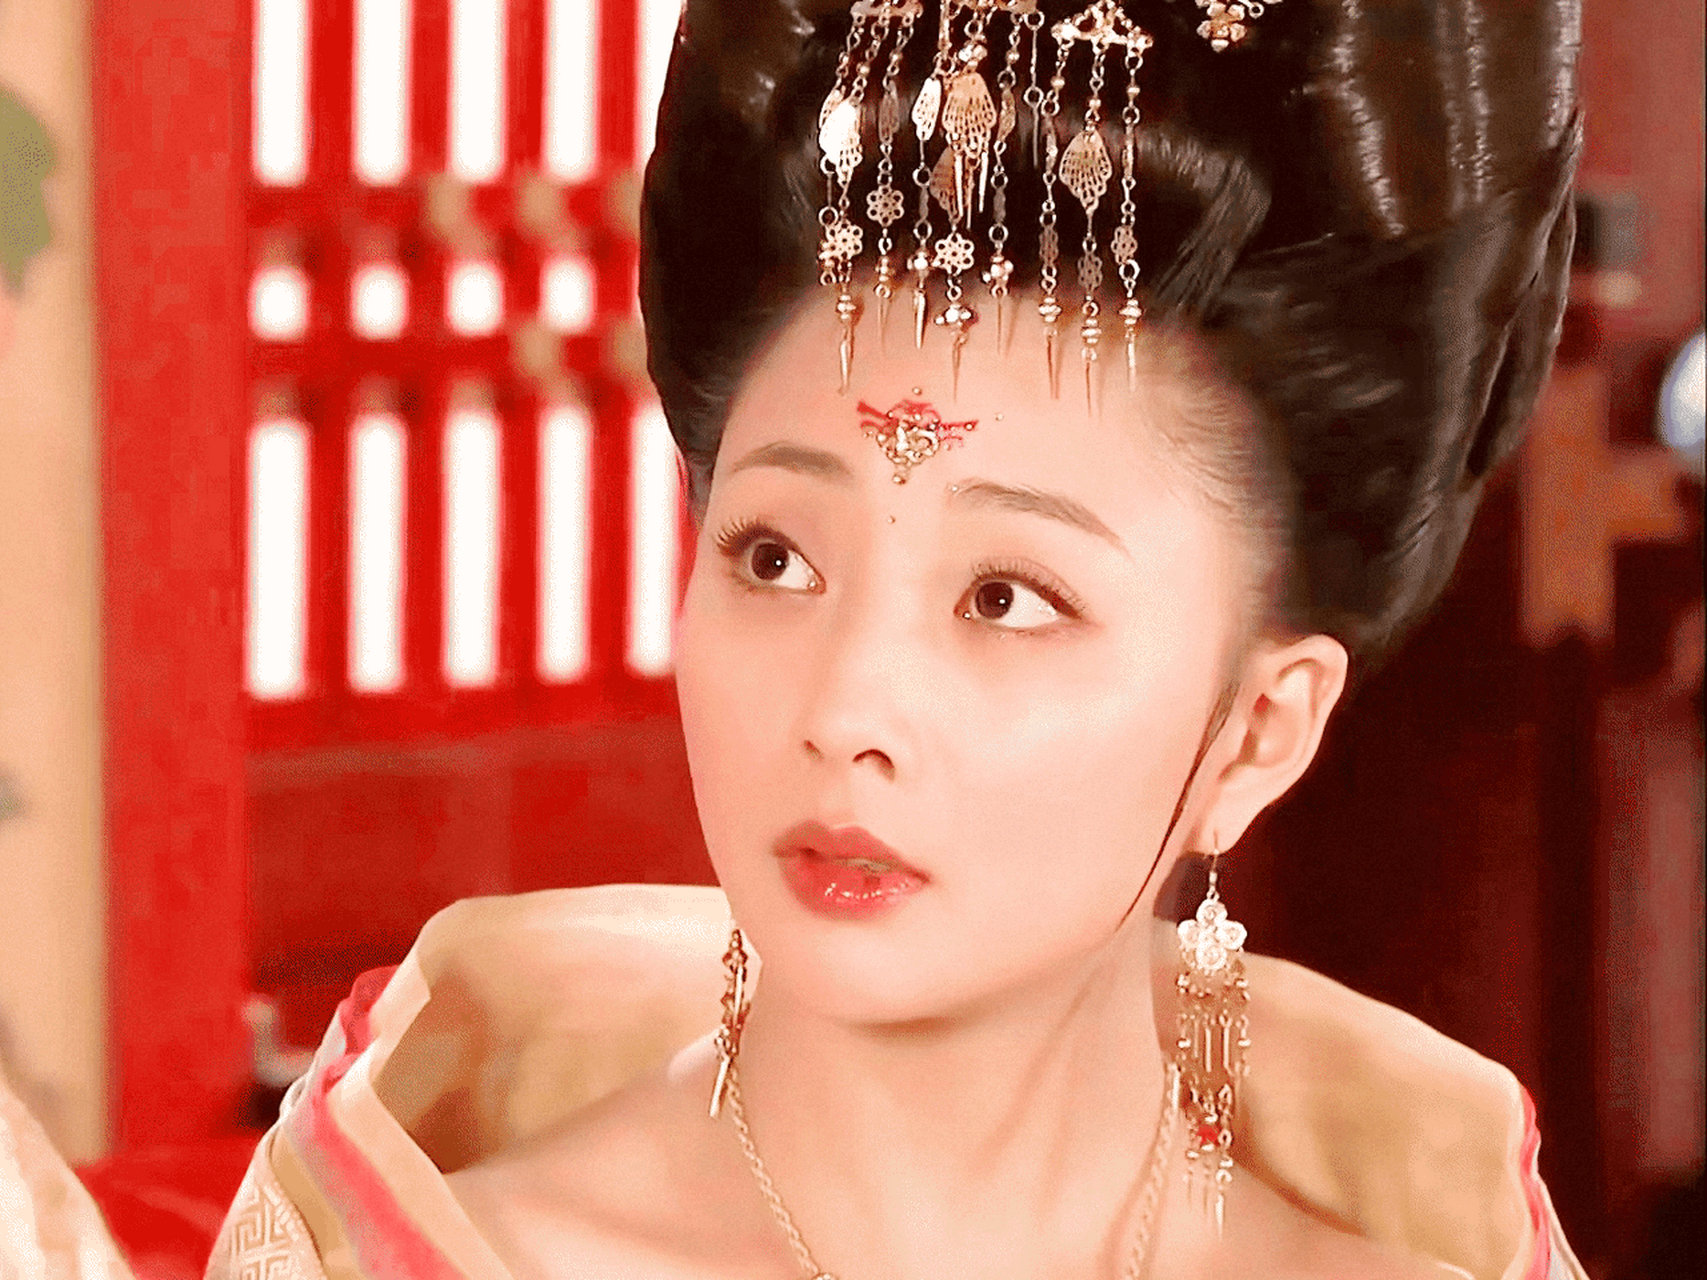 原来拍《杨贵妃秘史》时,殷桃并不是出演杨贵妃的首选